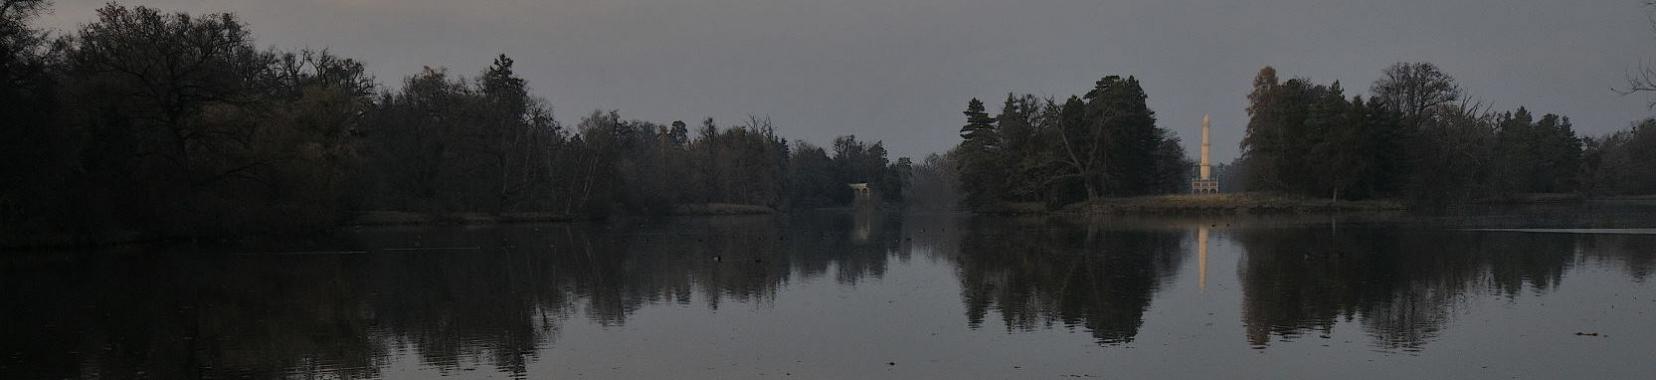 Blick über großen Teich auf Obelisk im Hintergrund in Gehölzumrandung. Landschaftspark Lednice.